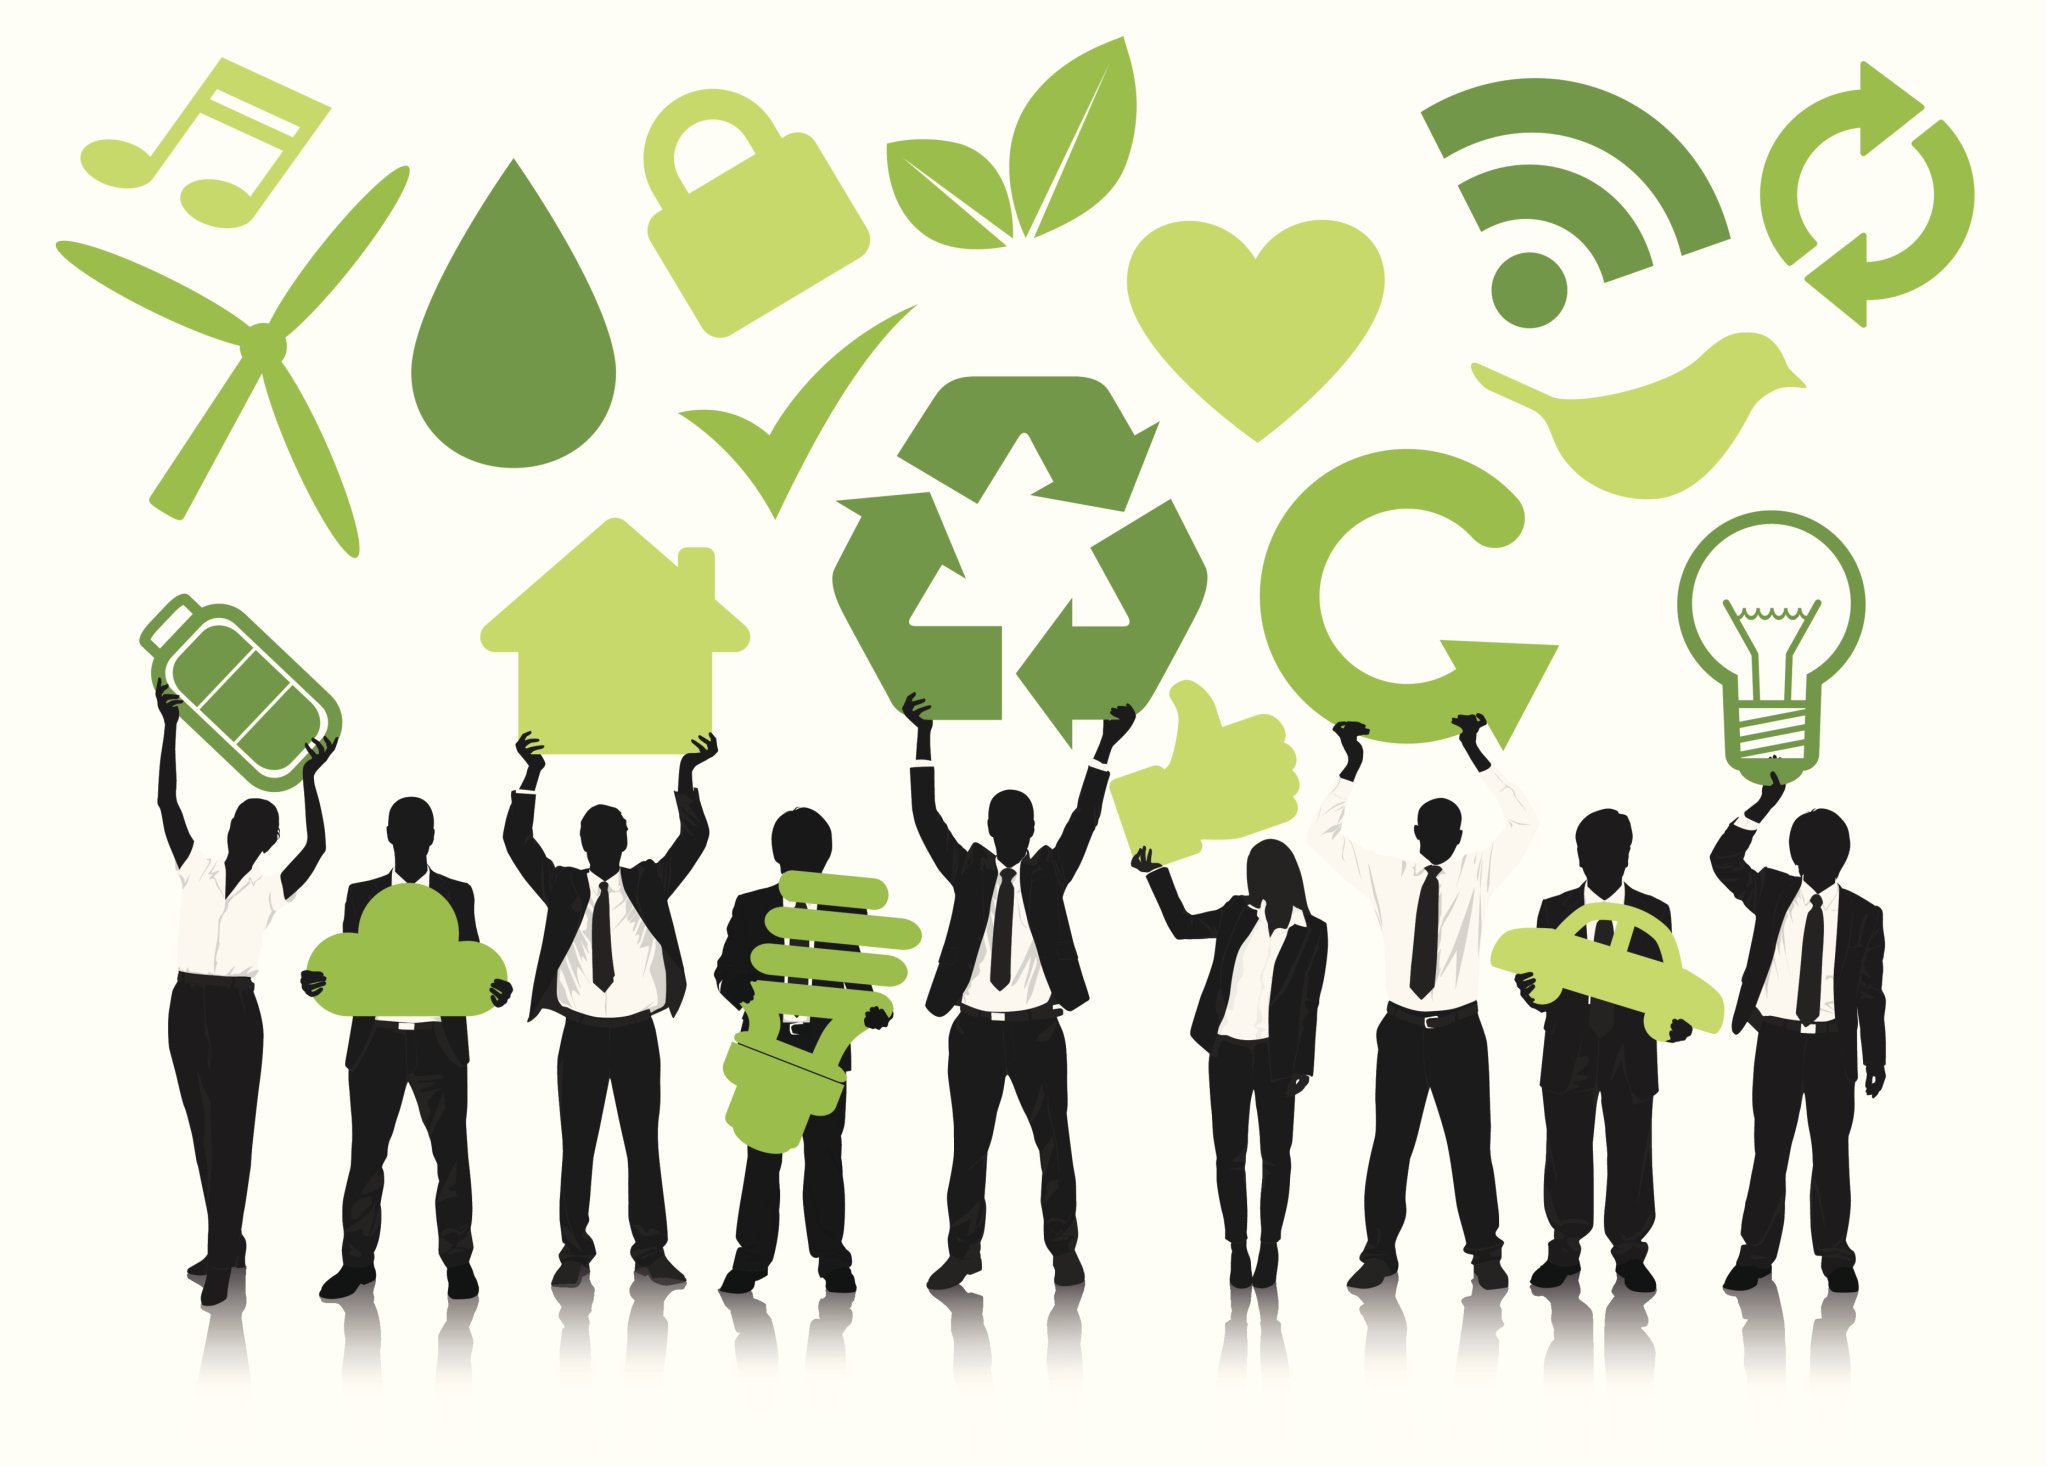 Сми экология. Значок экологии. Экологичный бизнес. Маркетинг иллюстрация в зеленых тонах. Зеленый менеджмент.